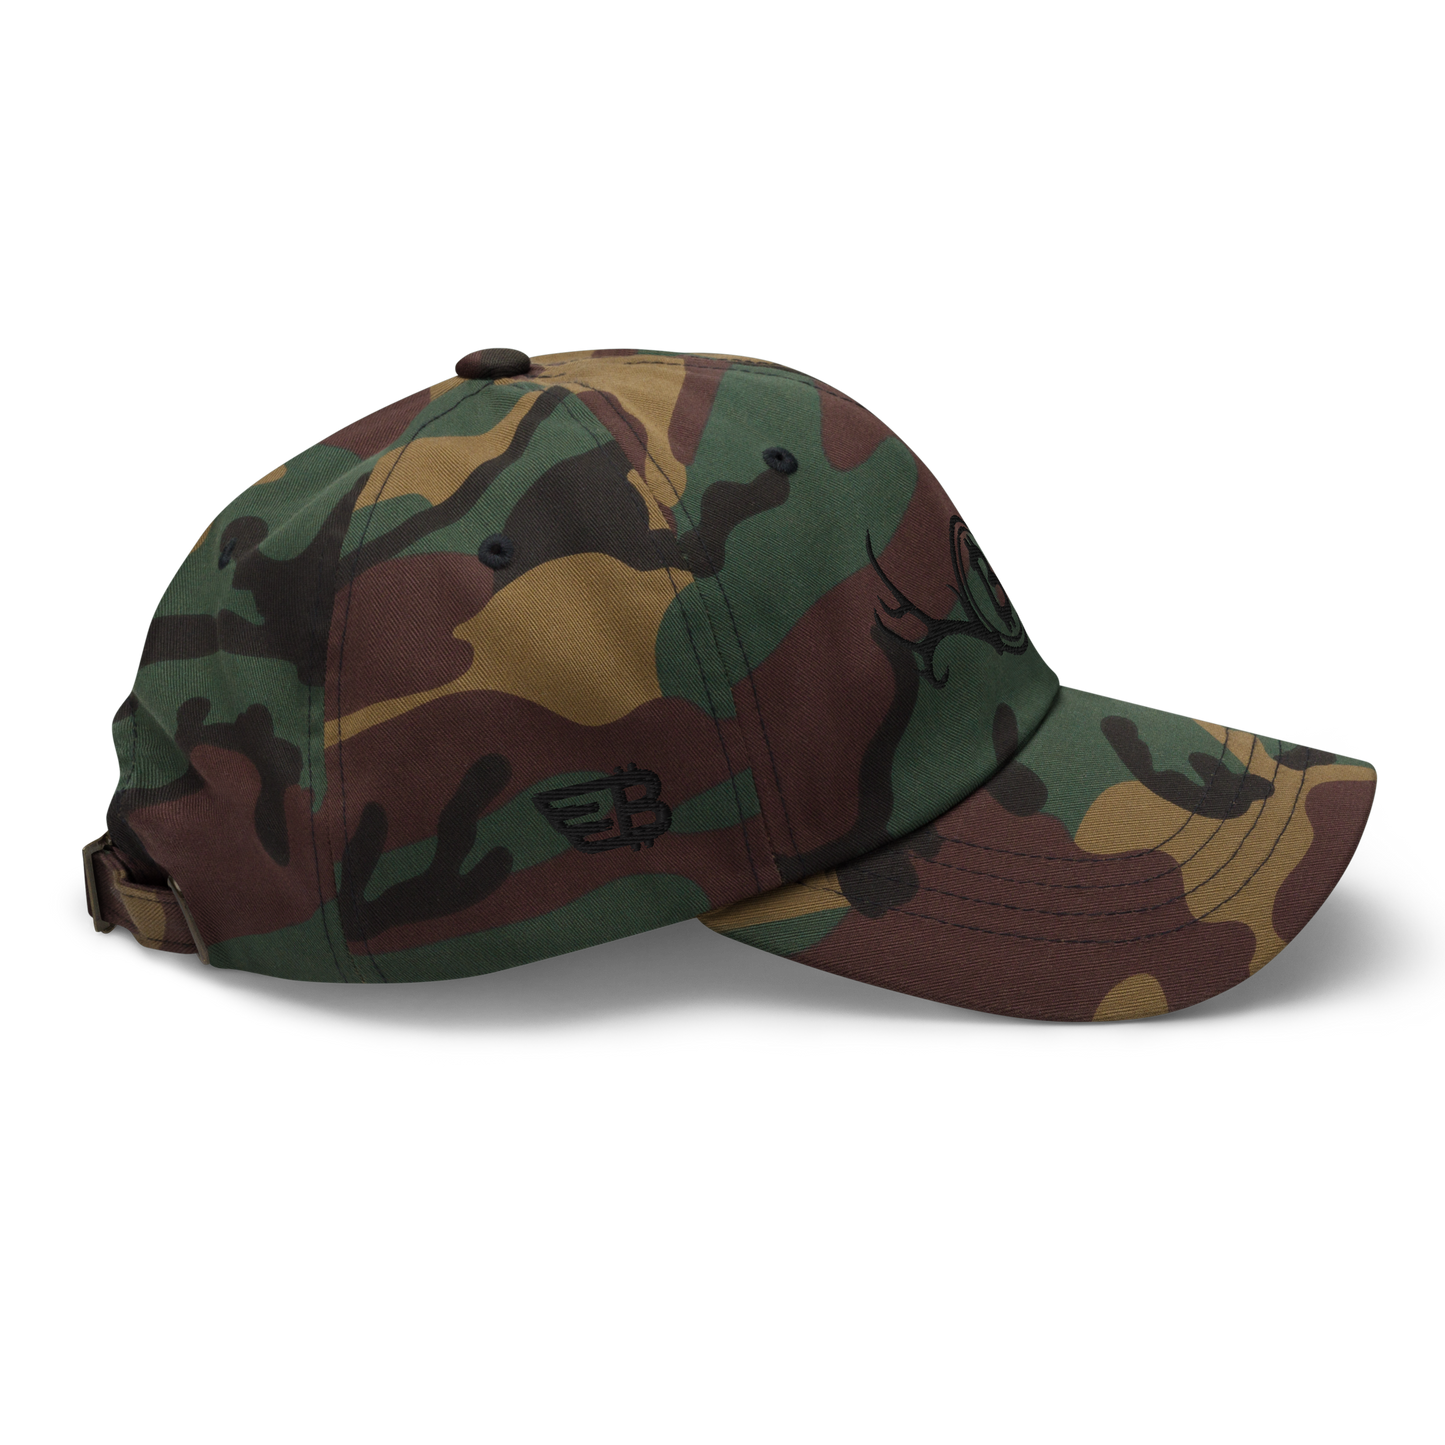 "Wild" Camouflage Dad hat